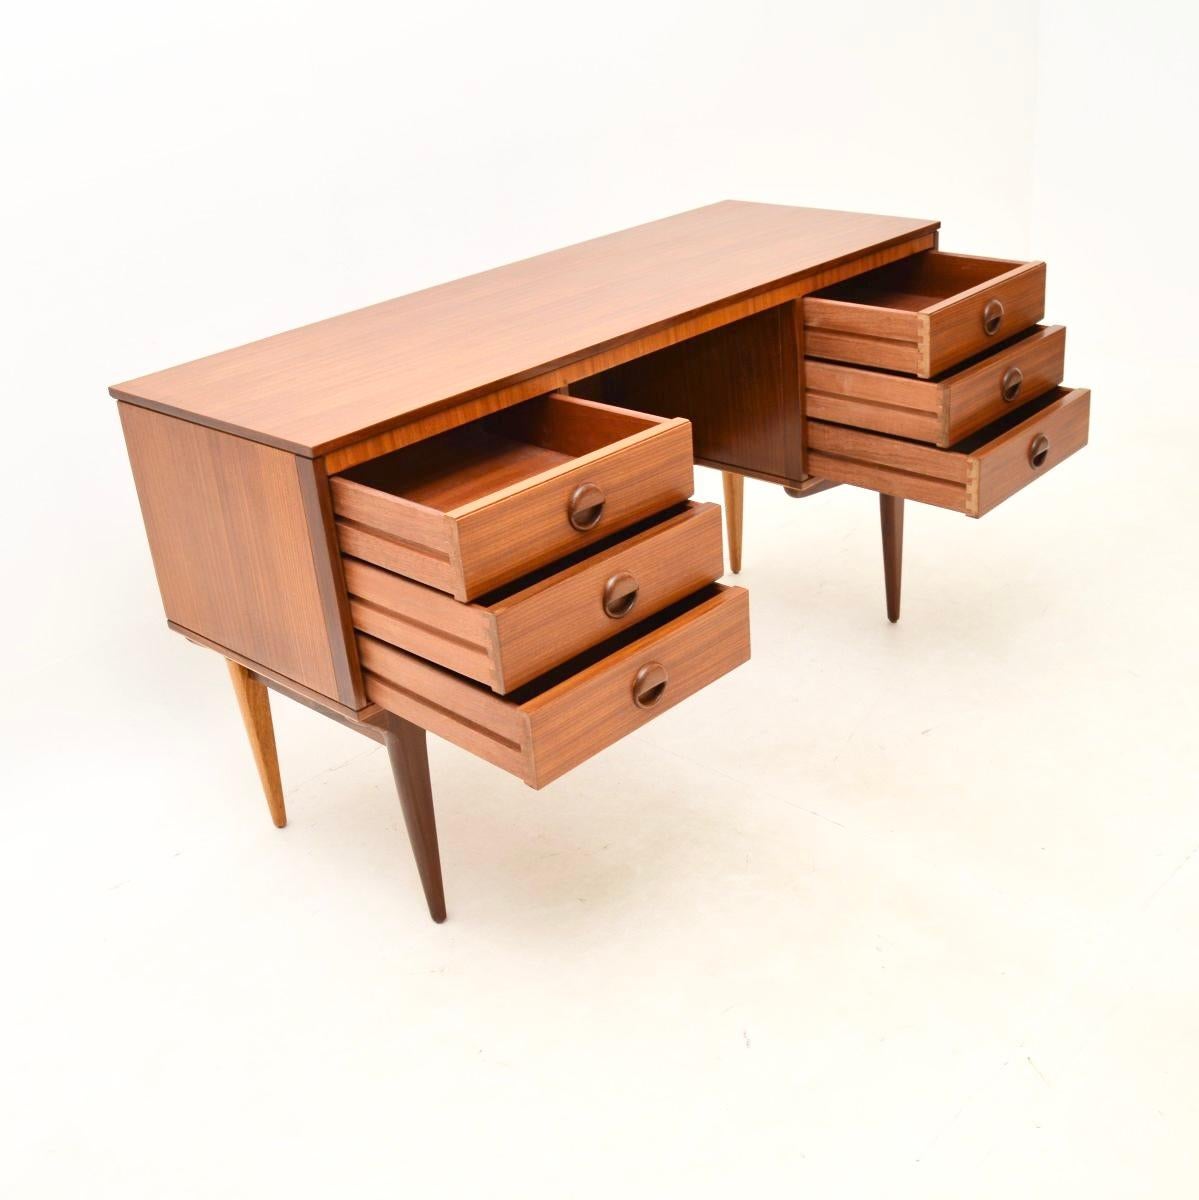 Ein stilvoller und sehr praktischer Vintage-Schreibtisch aus Nussbaumholz, der in England hergestellt wurde und aus den 1960er Jahren stammt.

Die Qualität ist hervorragend, das Design ist wunderschön, mit schönen runden, skulpturalen Griffen und